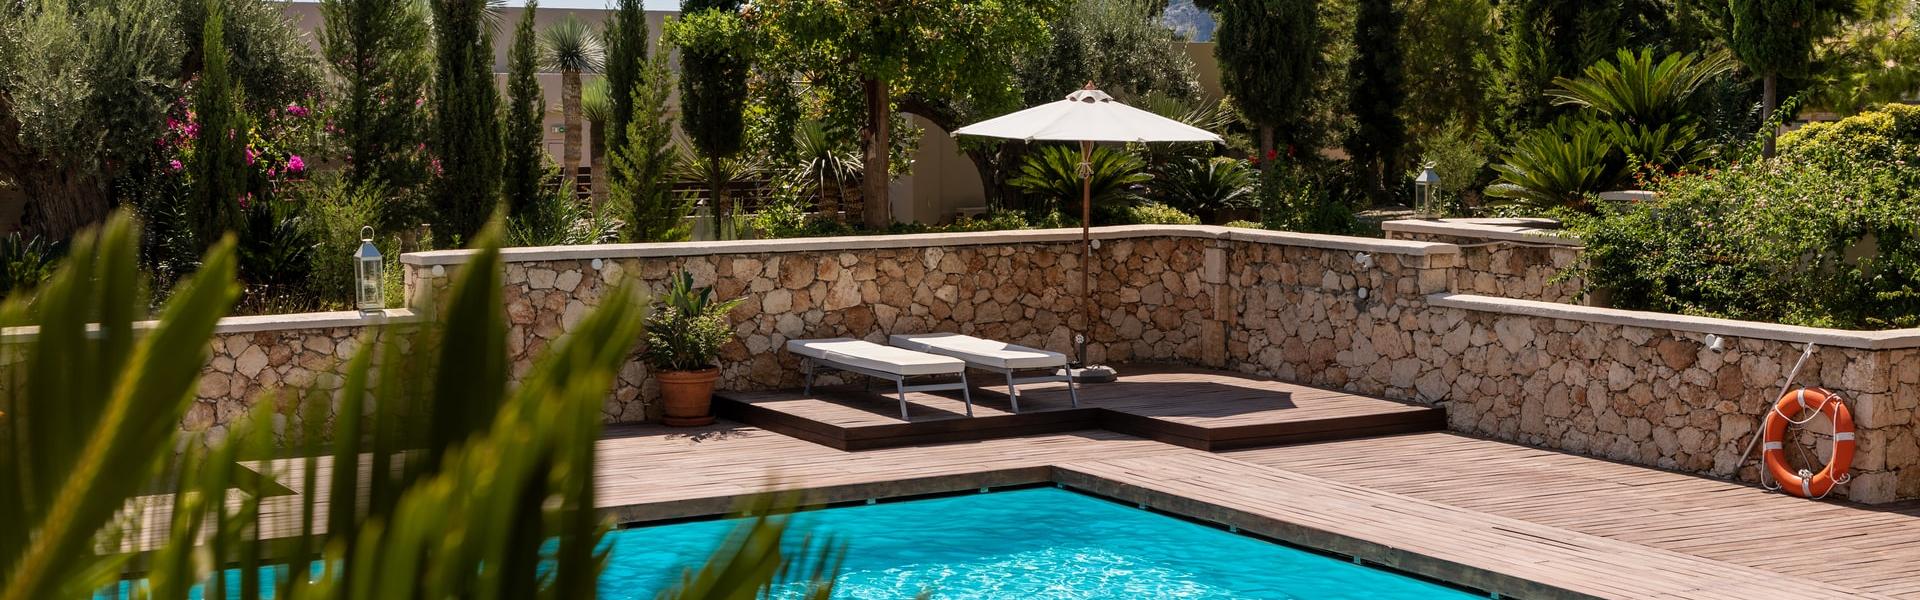 Ferienhaus mit Pool an der Algarve - Wimdu